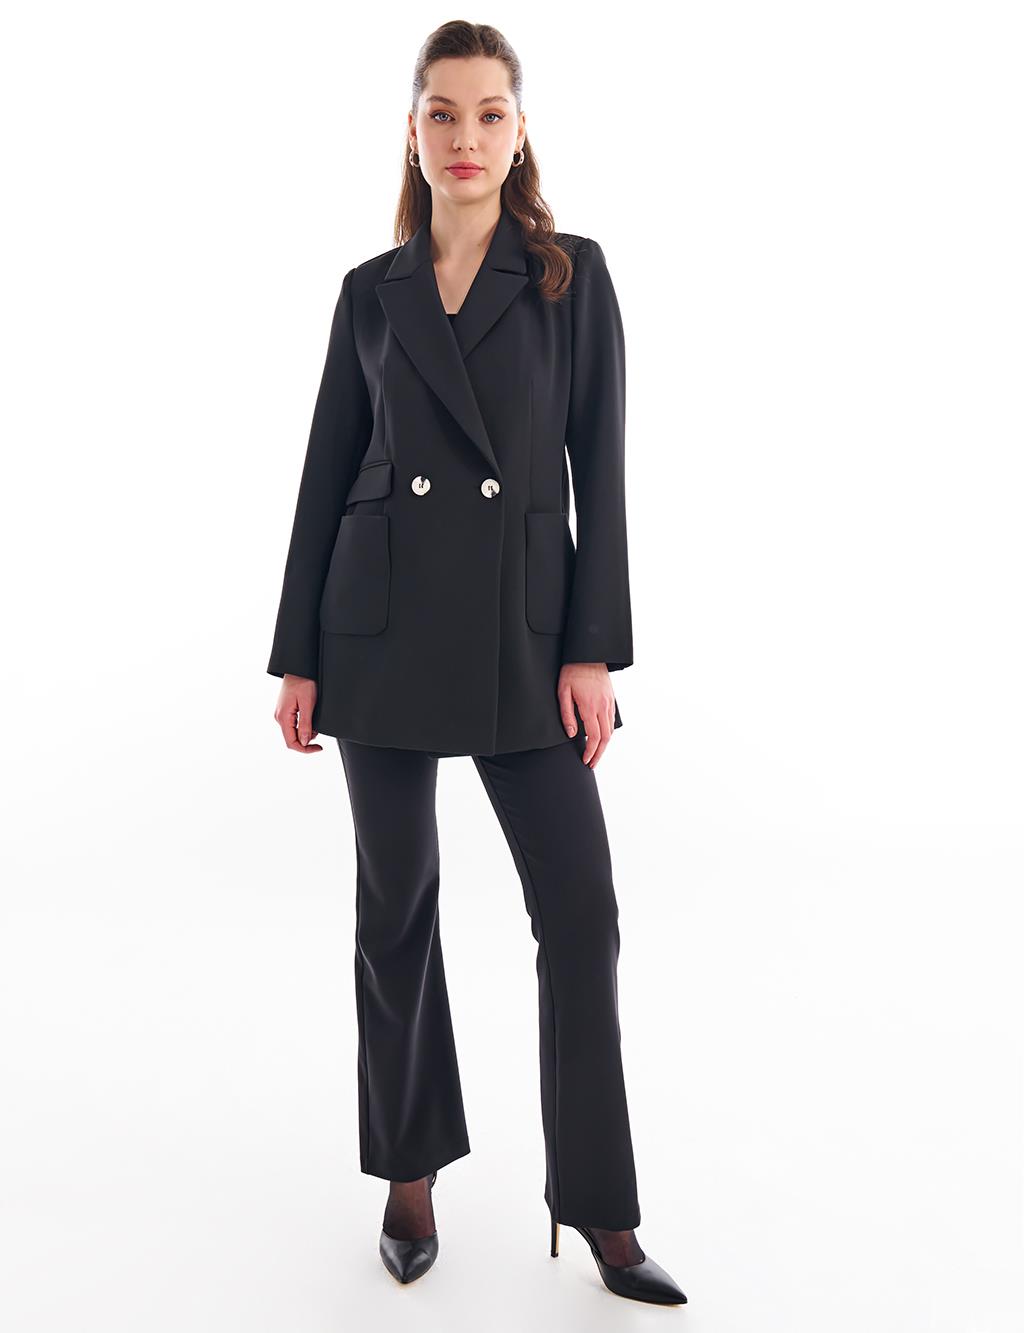 Базовый пиджак-пиджак черный KYR пиджак terranova базовый 44 размер